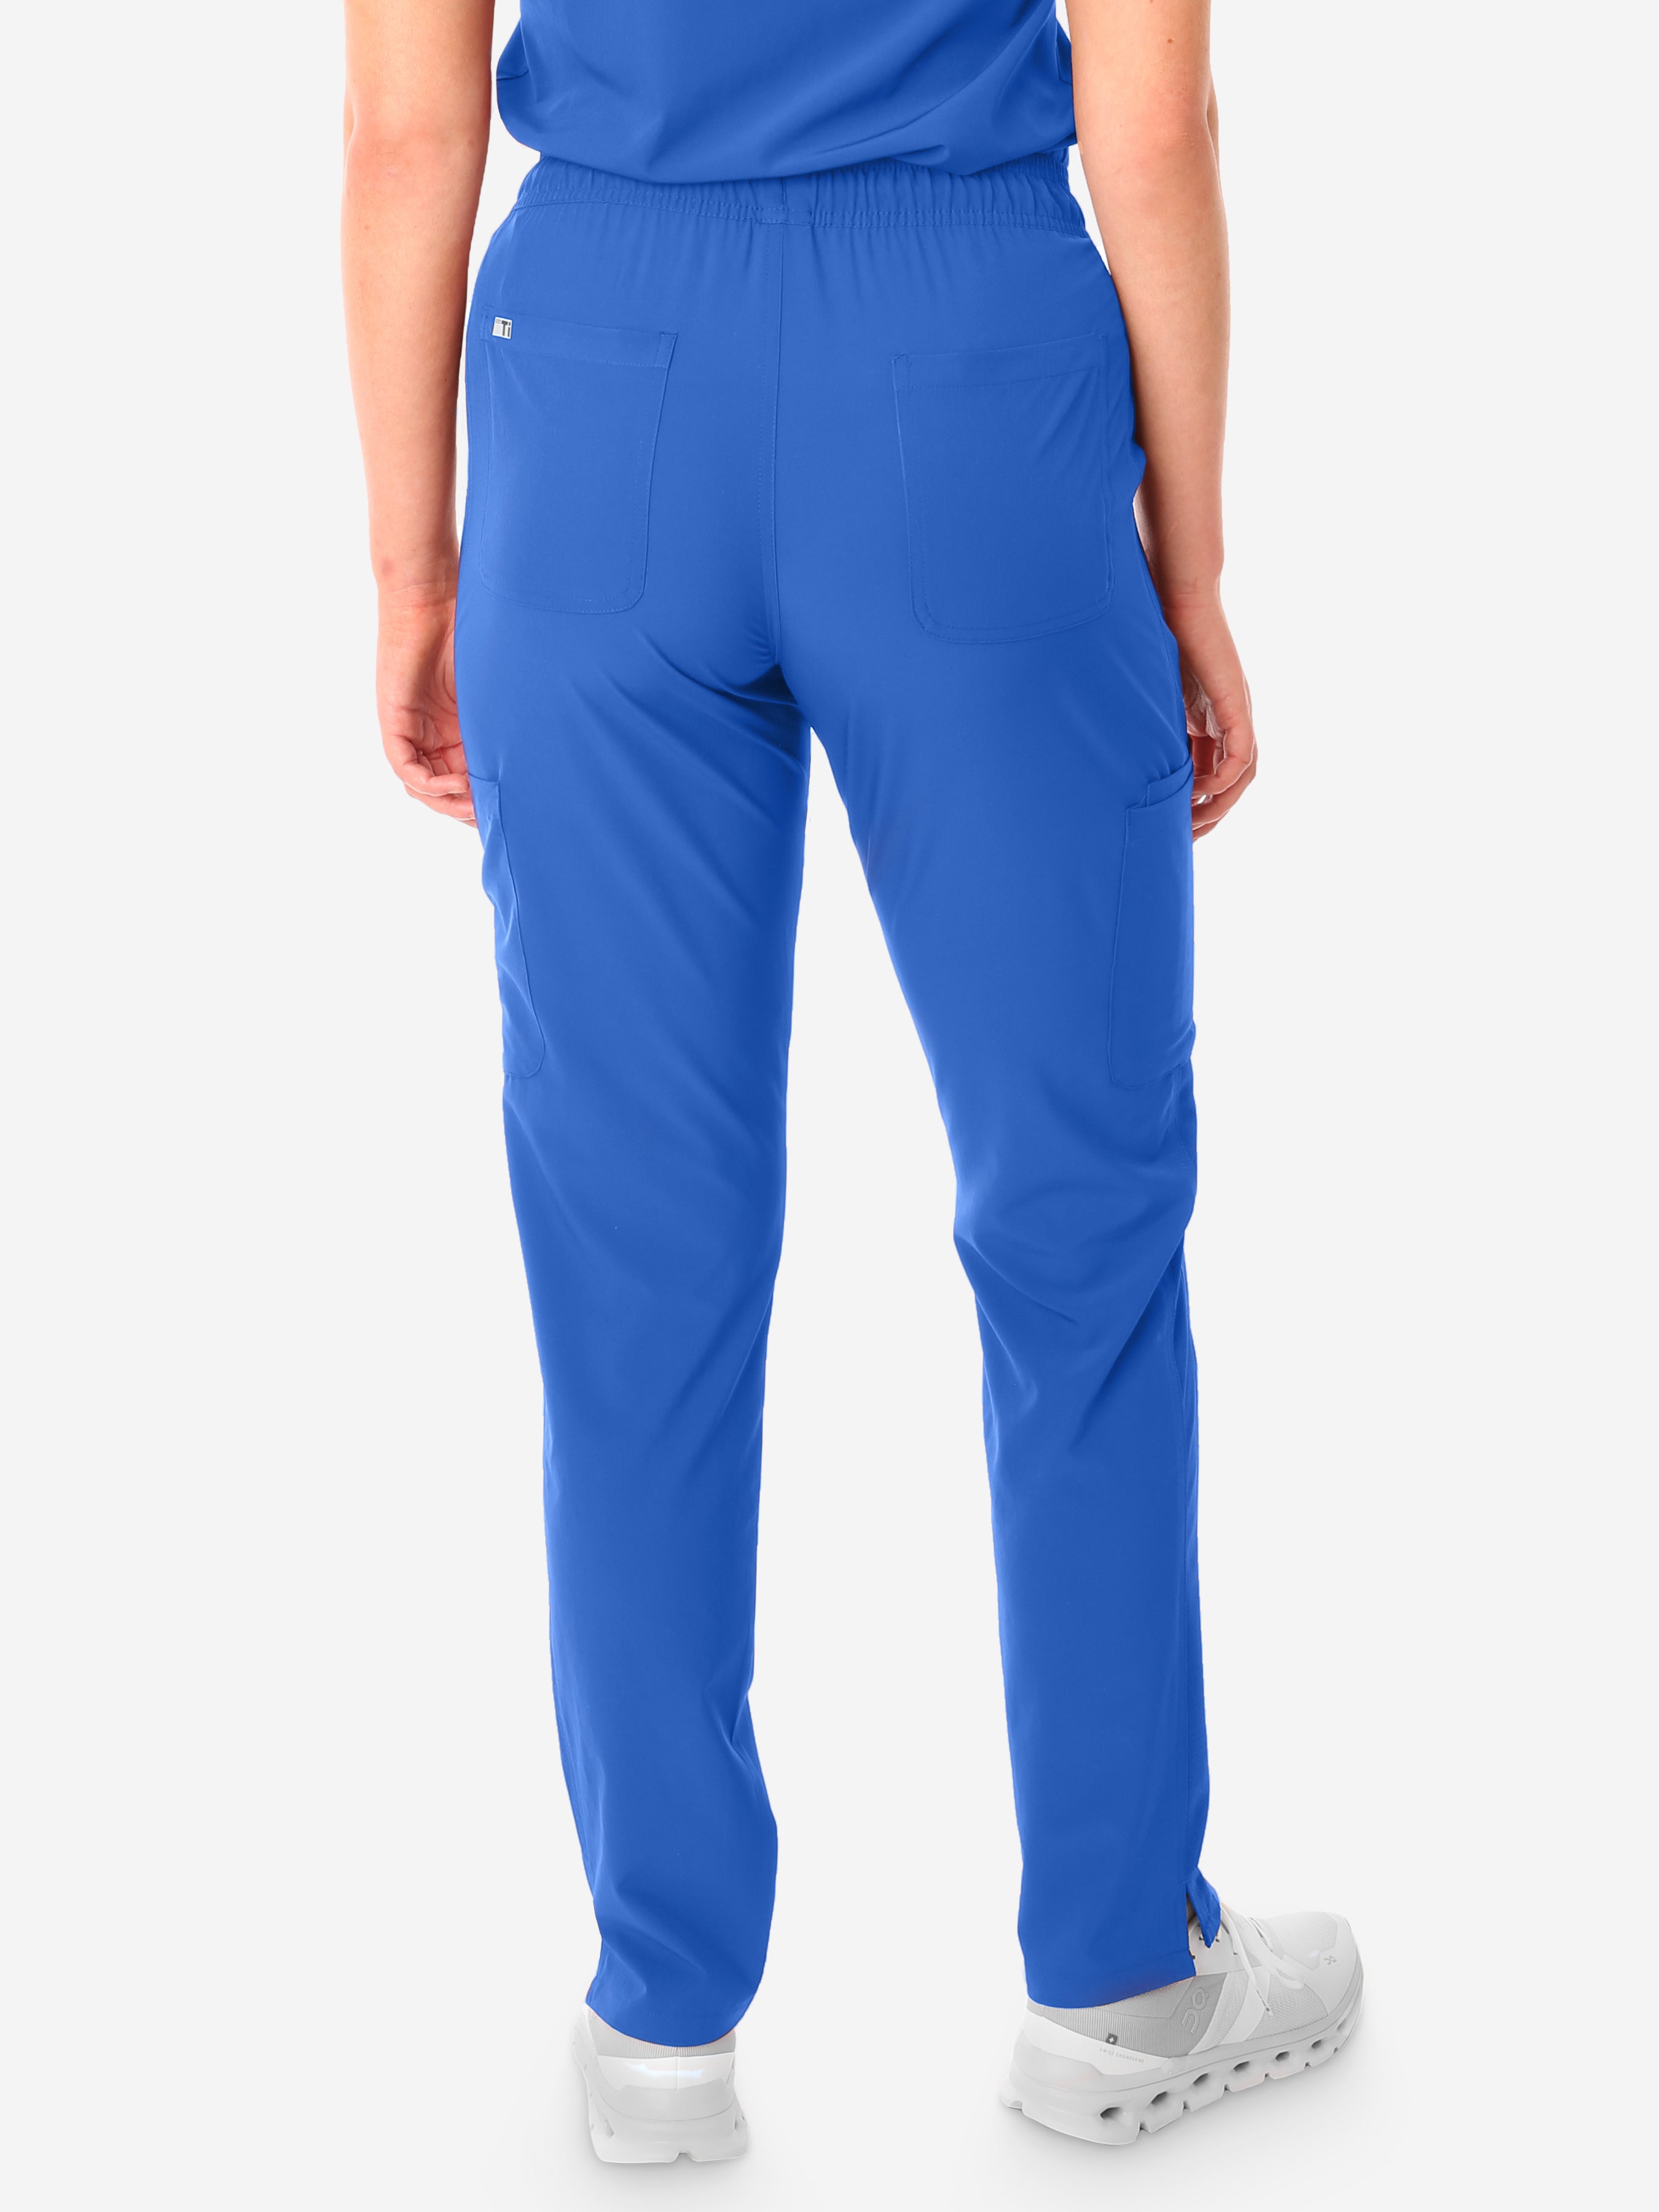 TiScrubs Royal Blue Women's Stretch 9-Pocket Pants Back View Pants Only